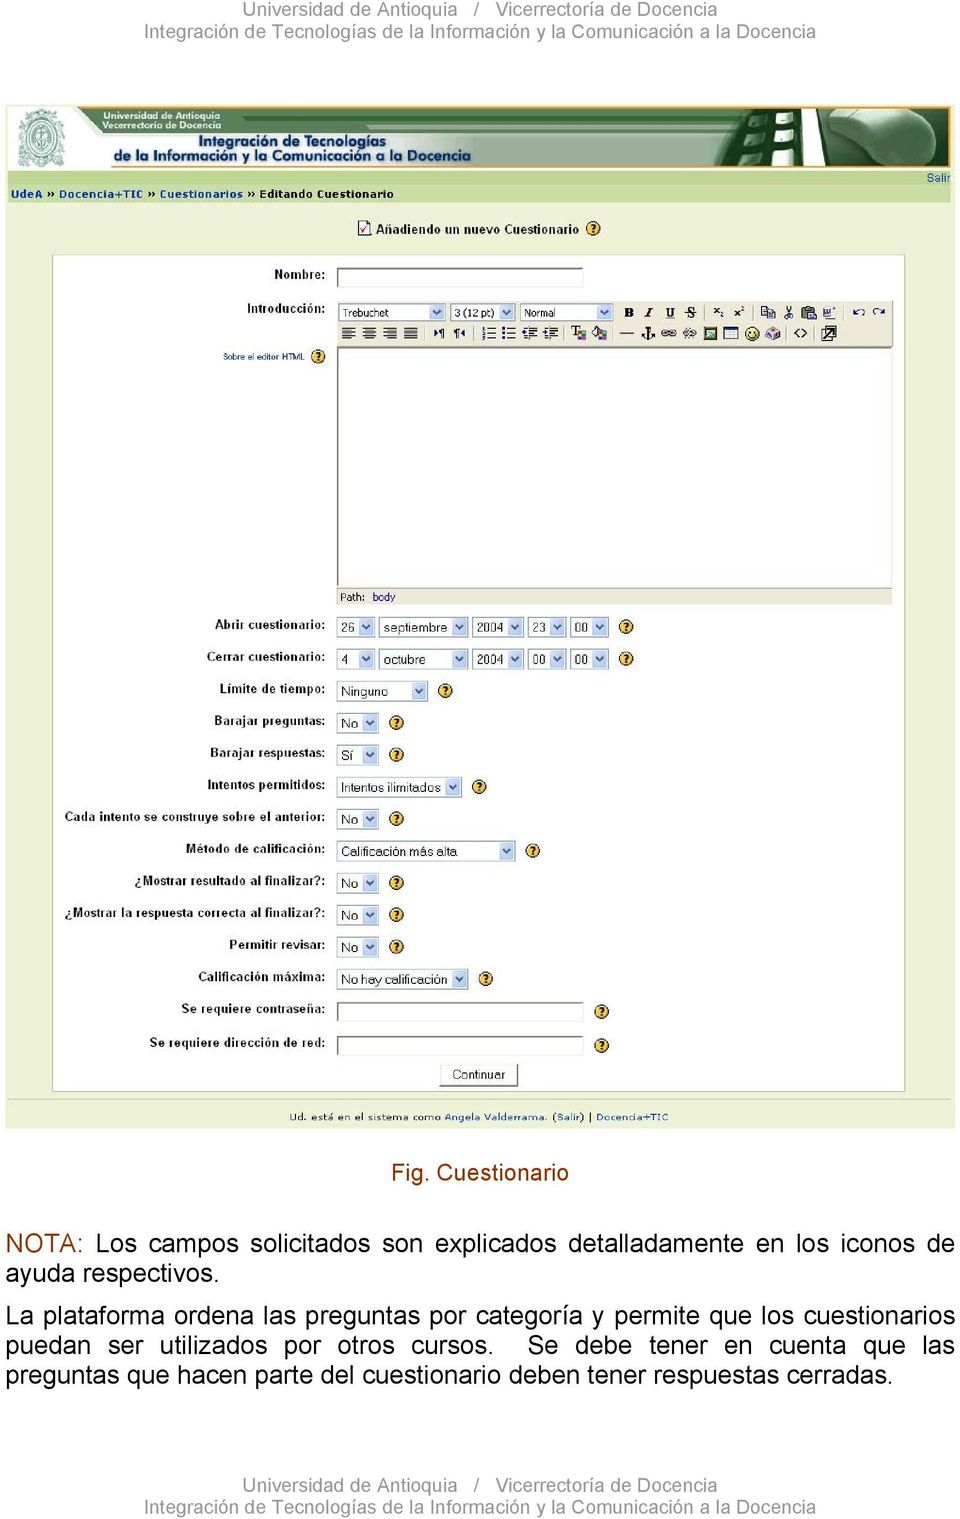 La plataforma ordena las preguntas por categoría y permite que los cuestionarios